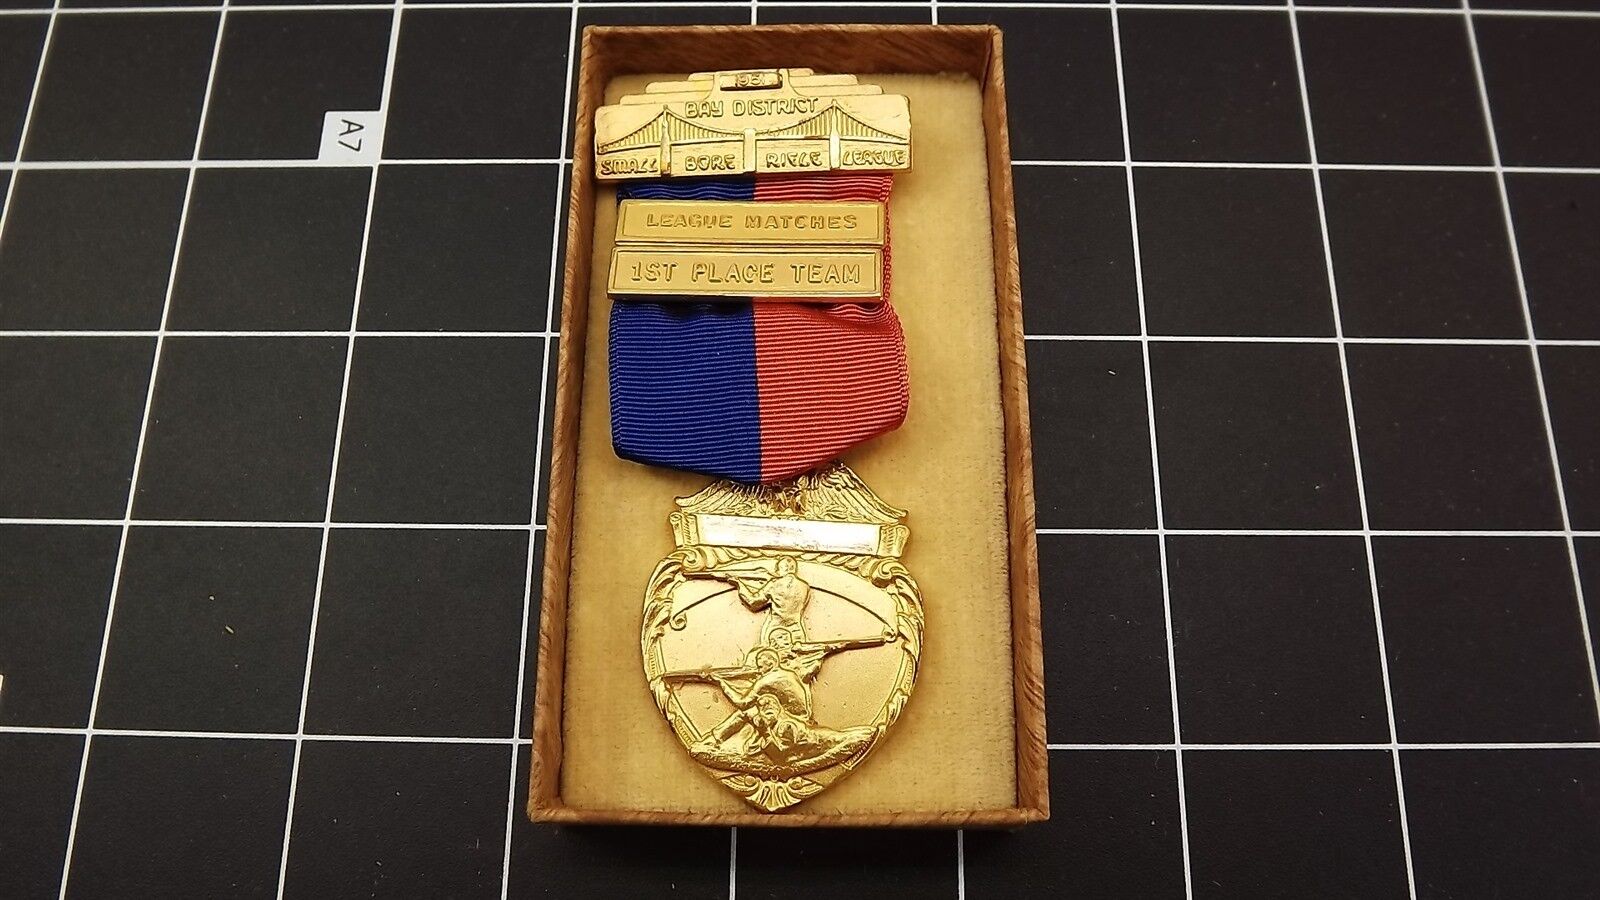 Antique 1951 Bay District Small Bore Rifle League League Matches 1ST Place Medal